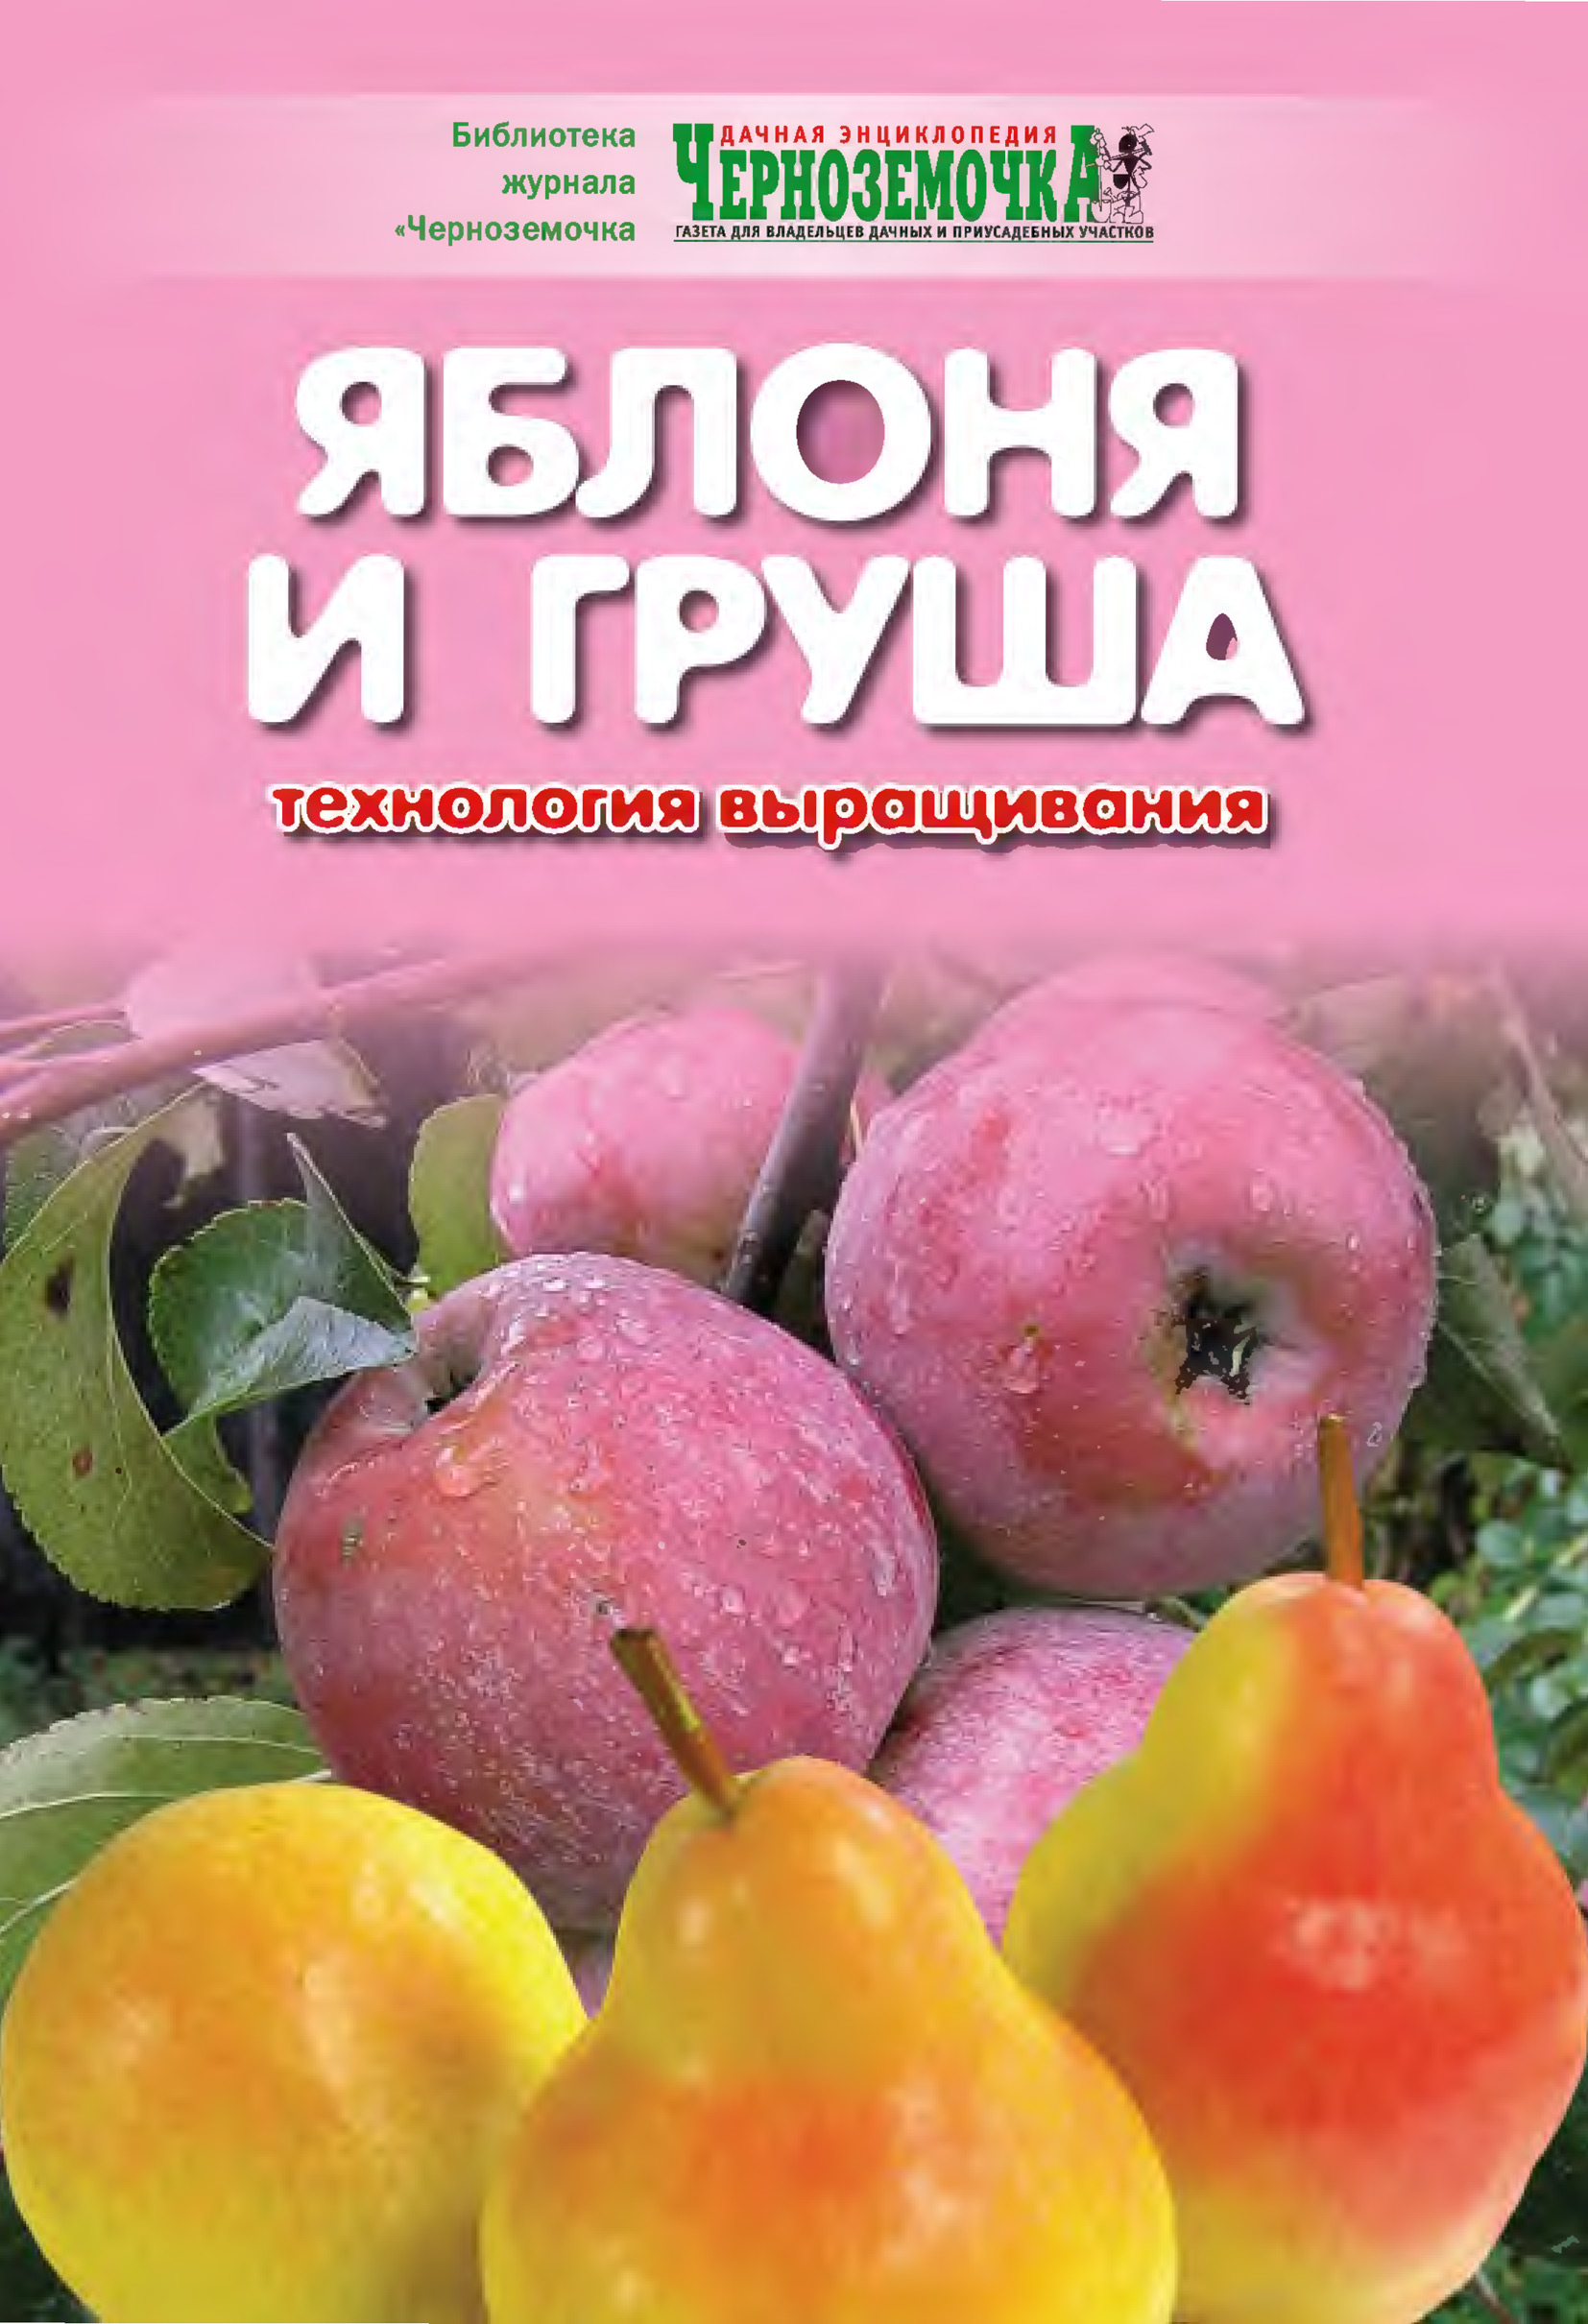 Книга Яблоня и груша. Технология выращивания из серии Библиотека журнала 